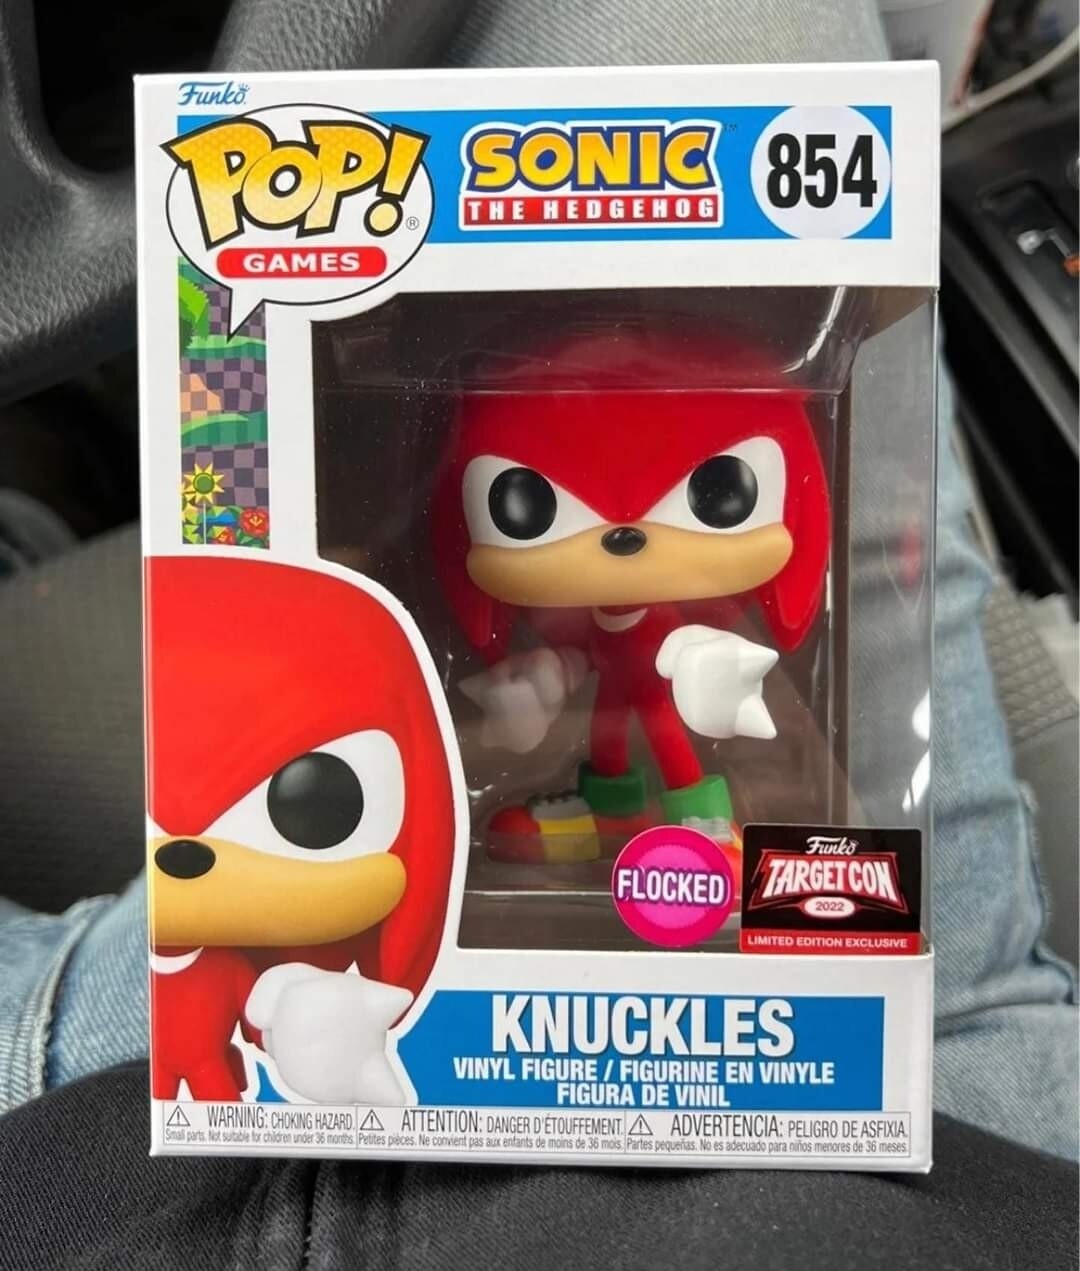  Funko Pop Sonic. Knuckles Exclusivo de Target